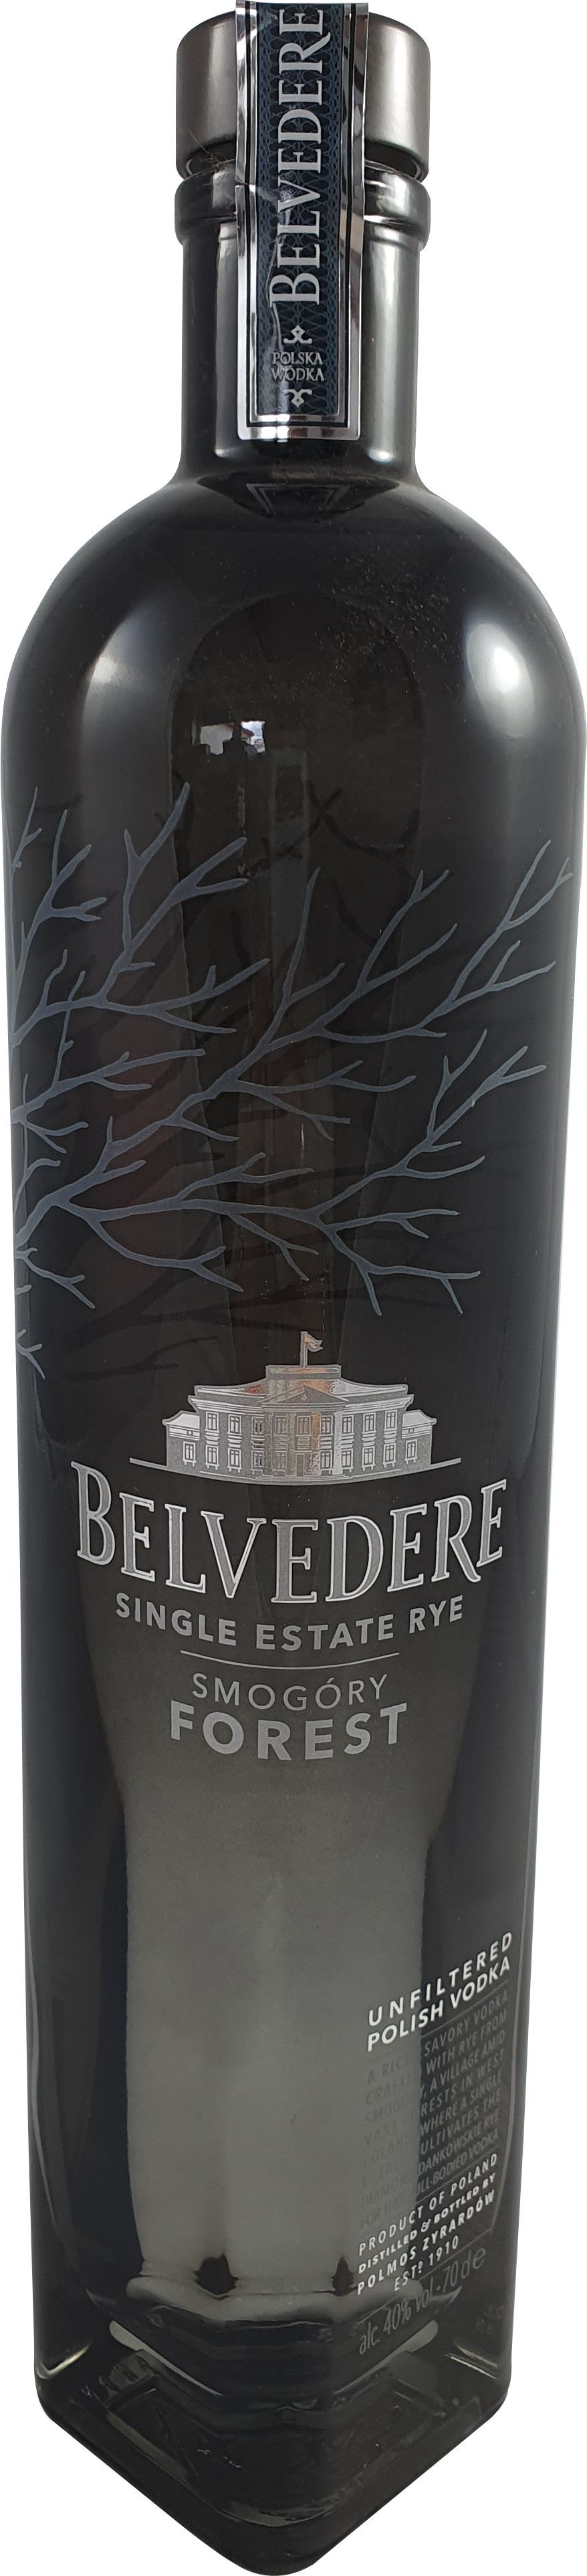 Belvedere Smogory Forest Rye Vodka 40 % 